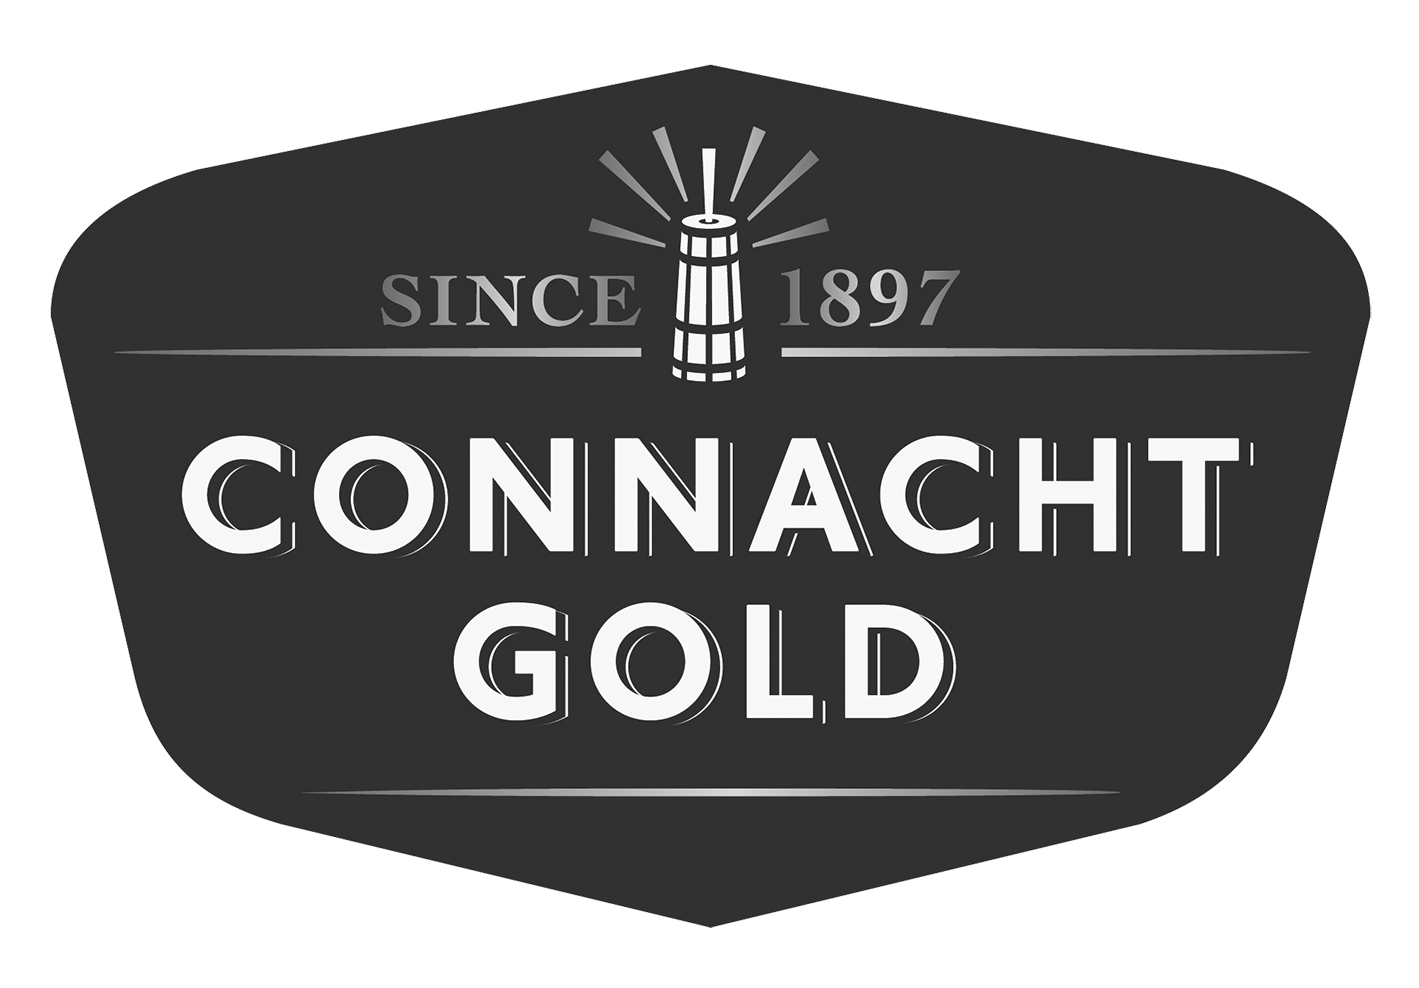 Connacht Gold